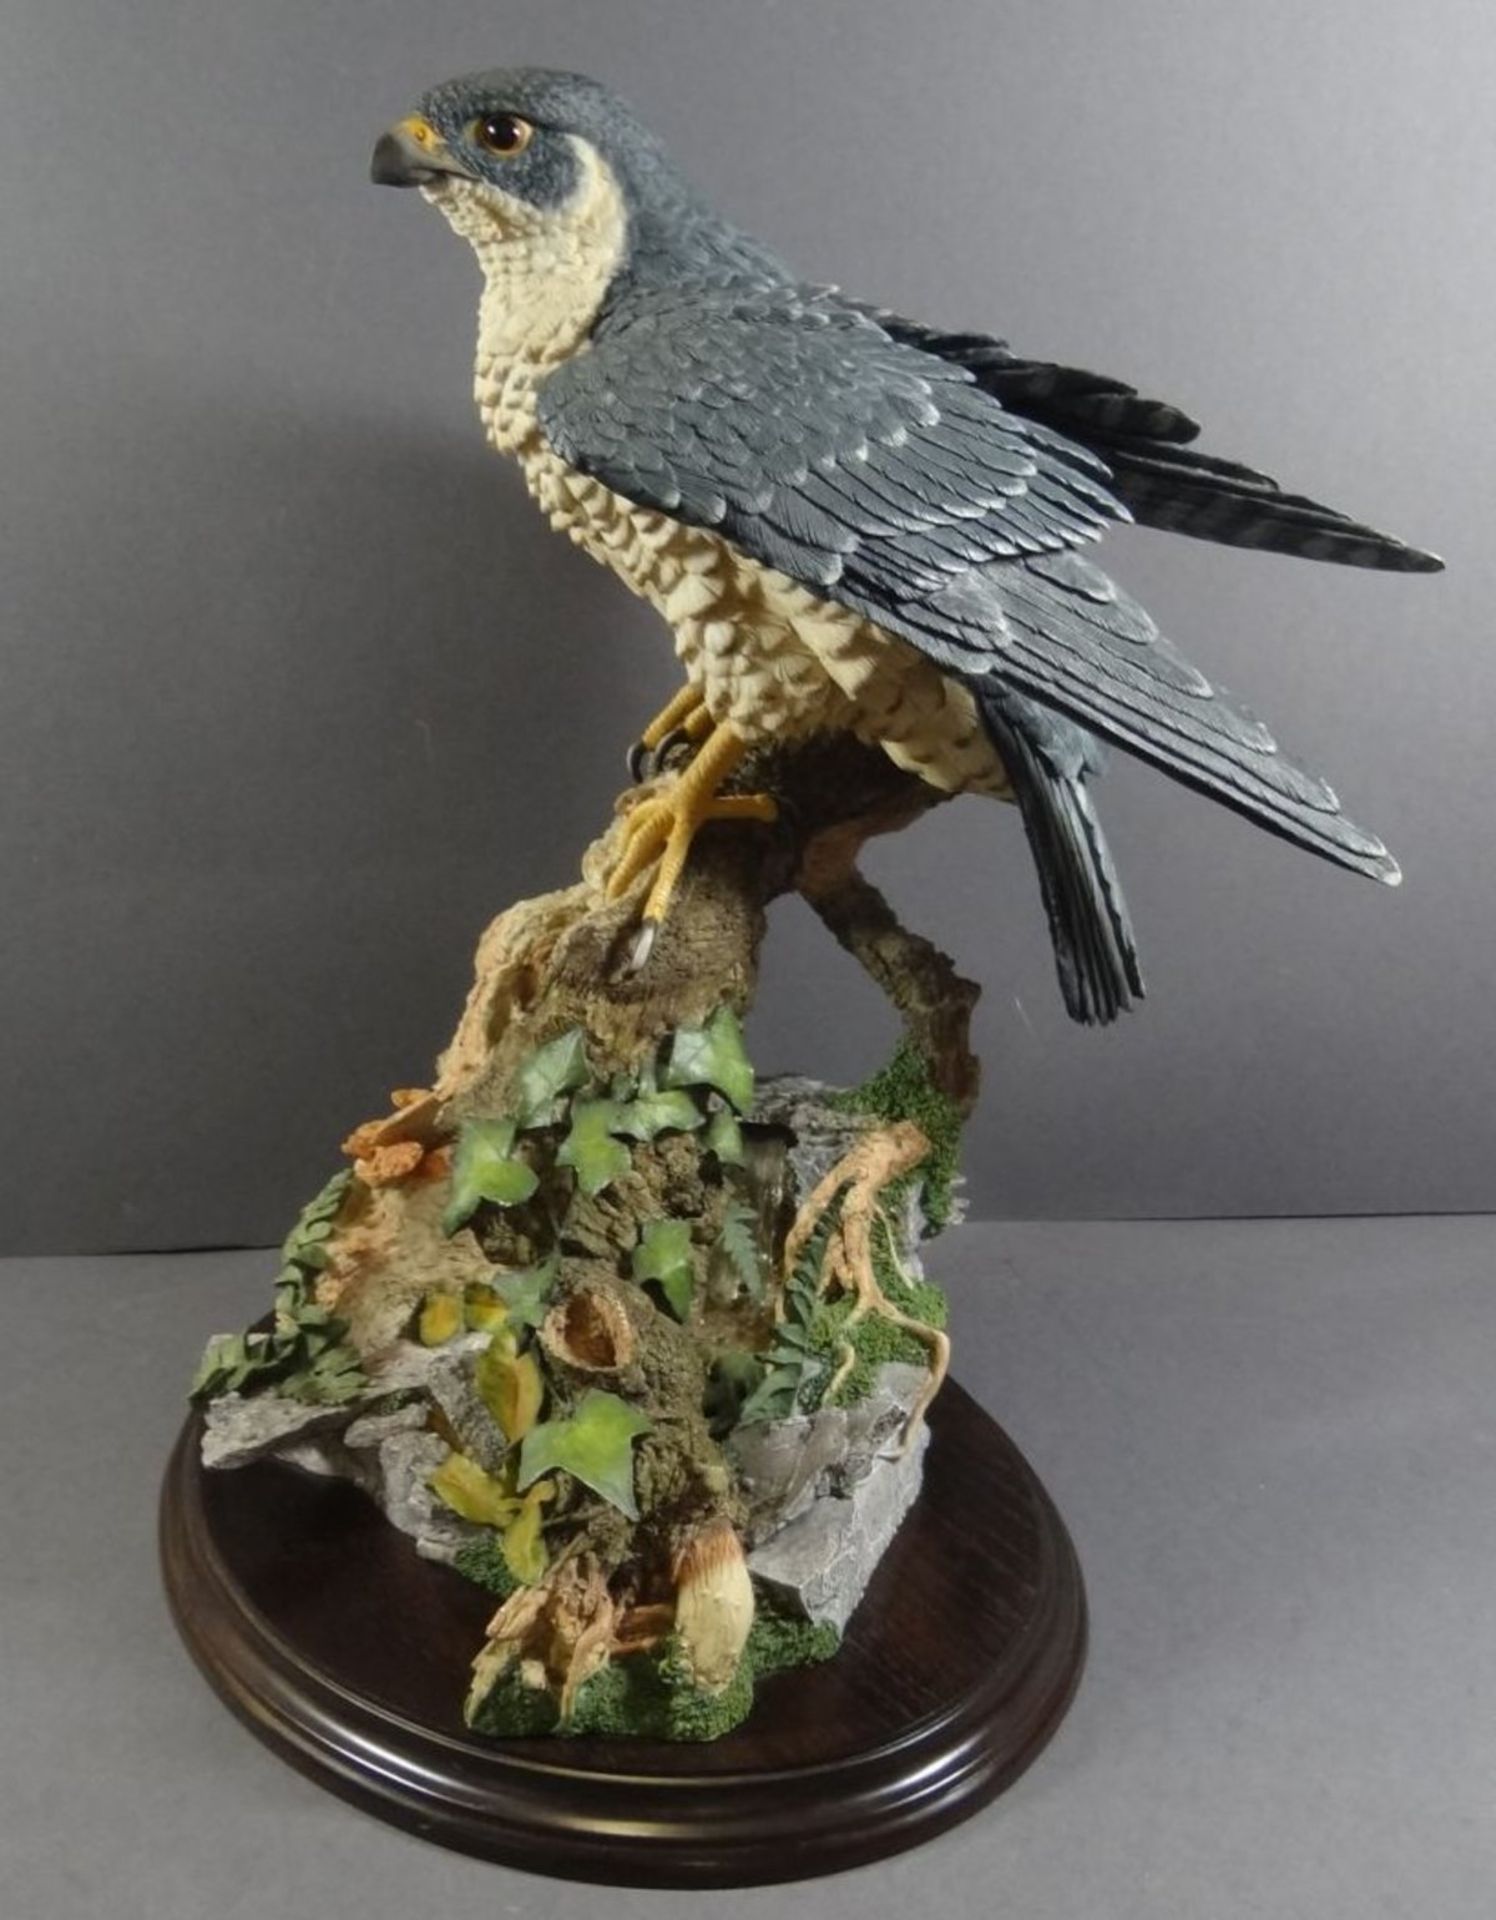 grosser Raubvogel von Goebel "Lord of the skies" handcrafted in England, H-40 cm, B-32 cm - Bild 6 aus 10